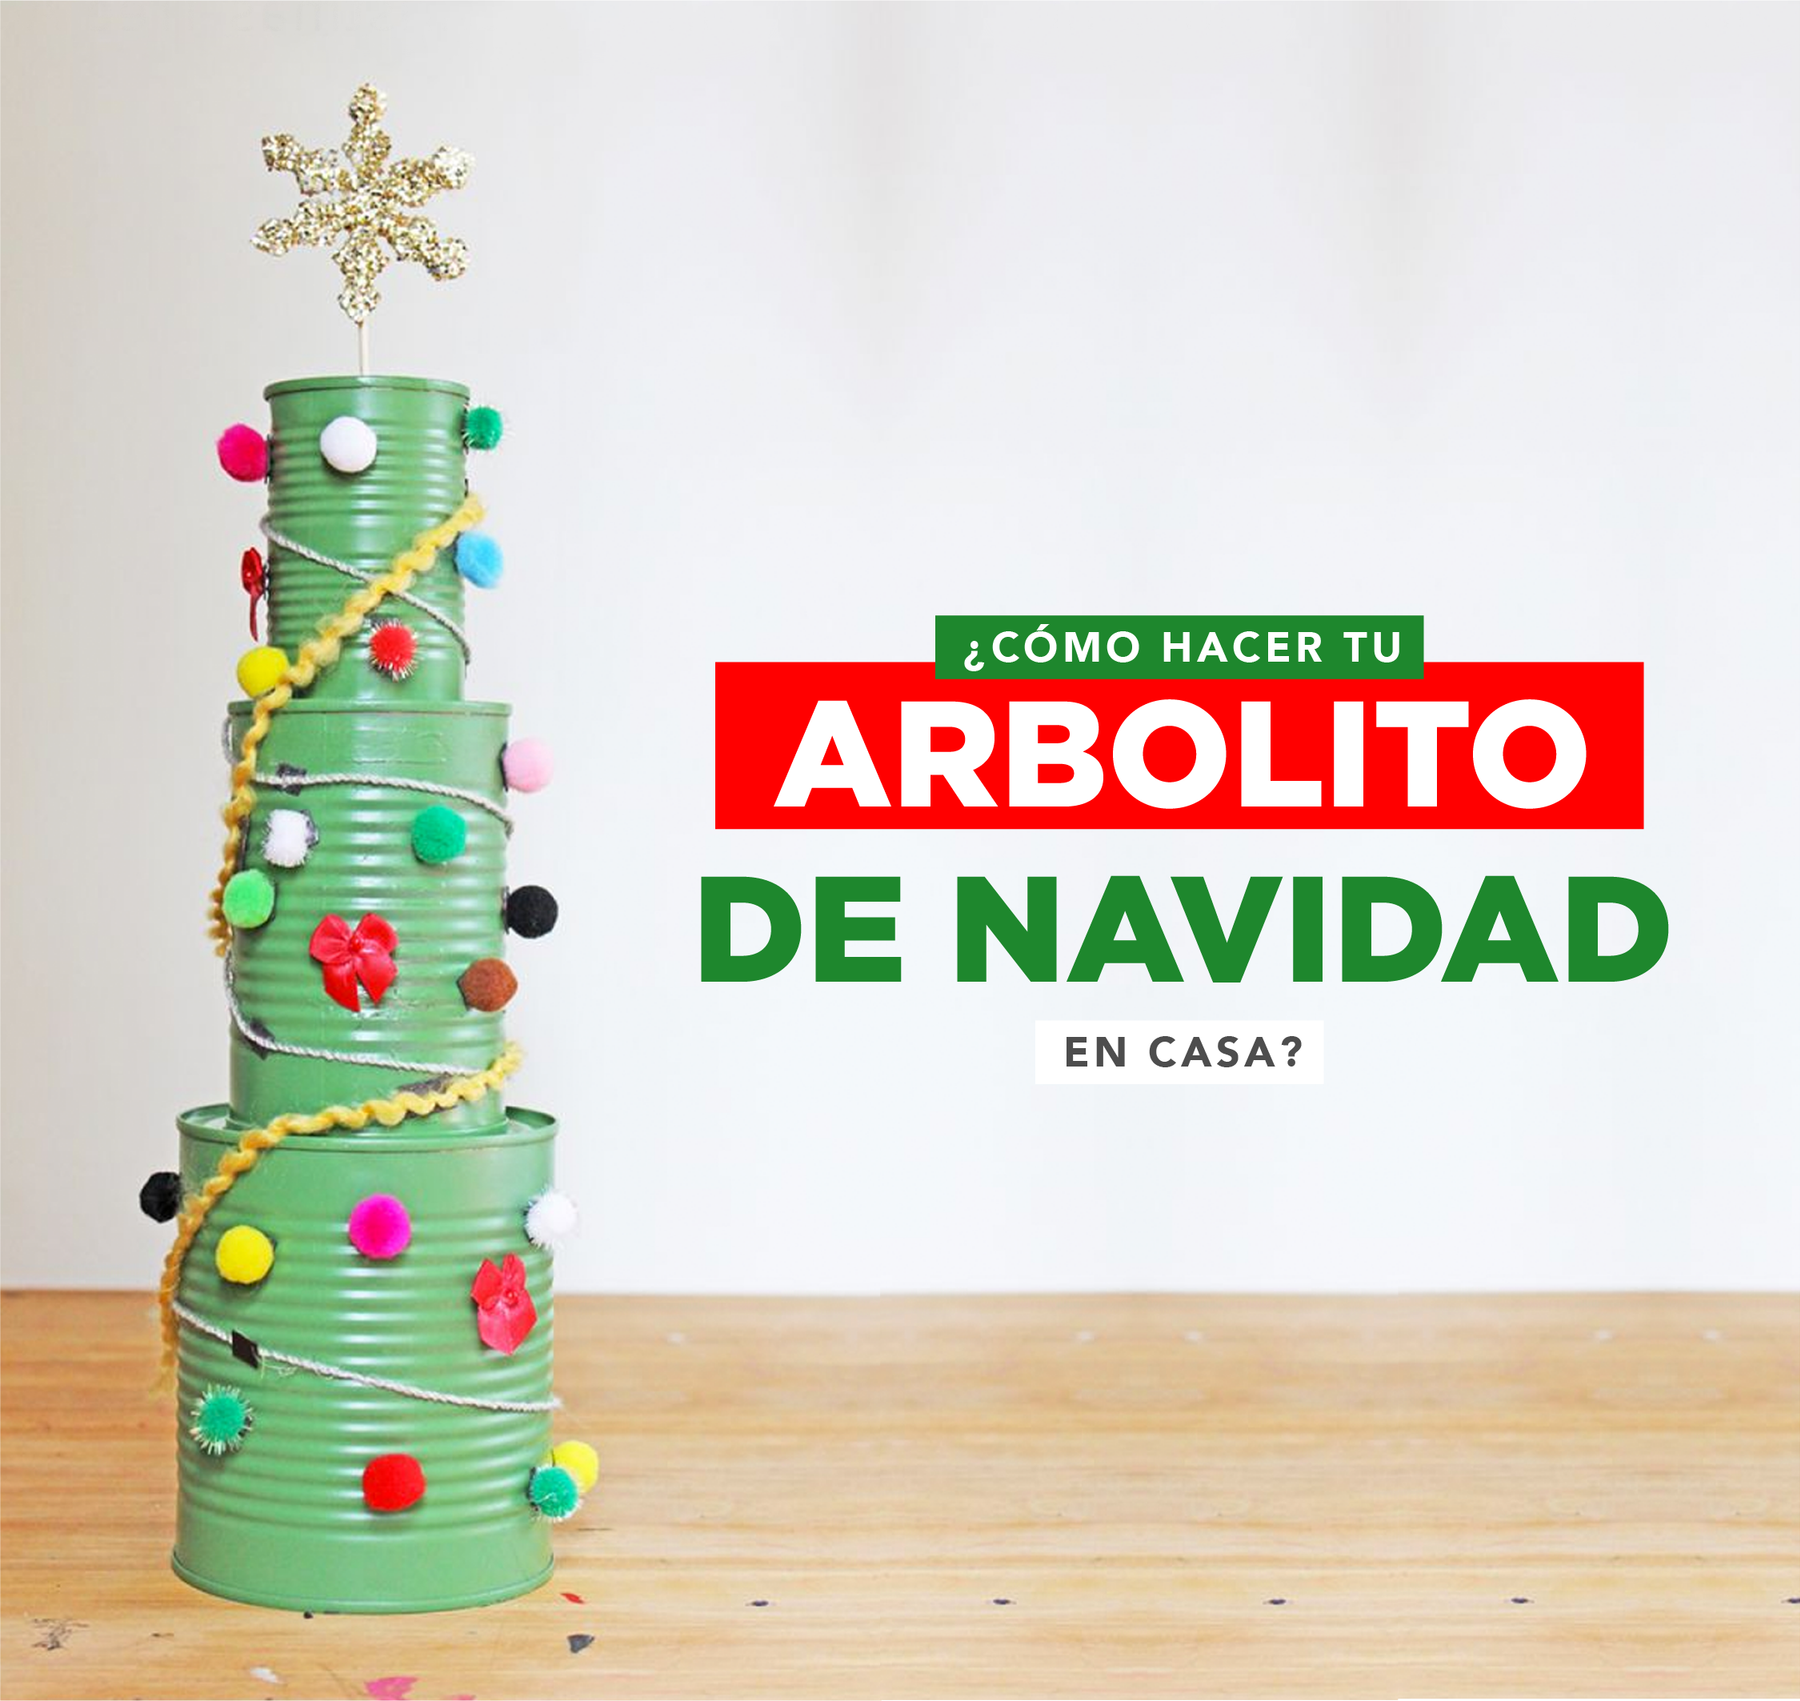 ¿Cómo hacer tu arbolito de navidad en casa? - Villarreal Muebles Monterrey